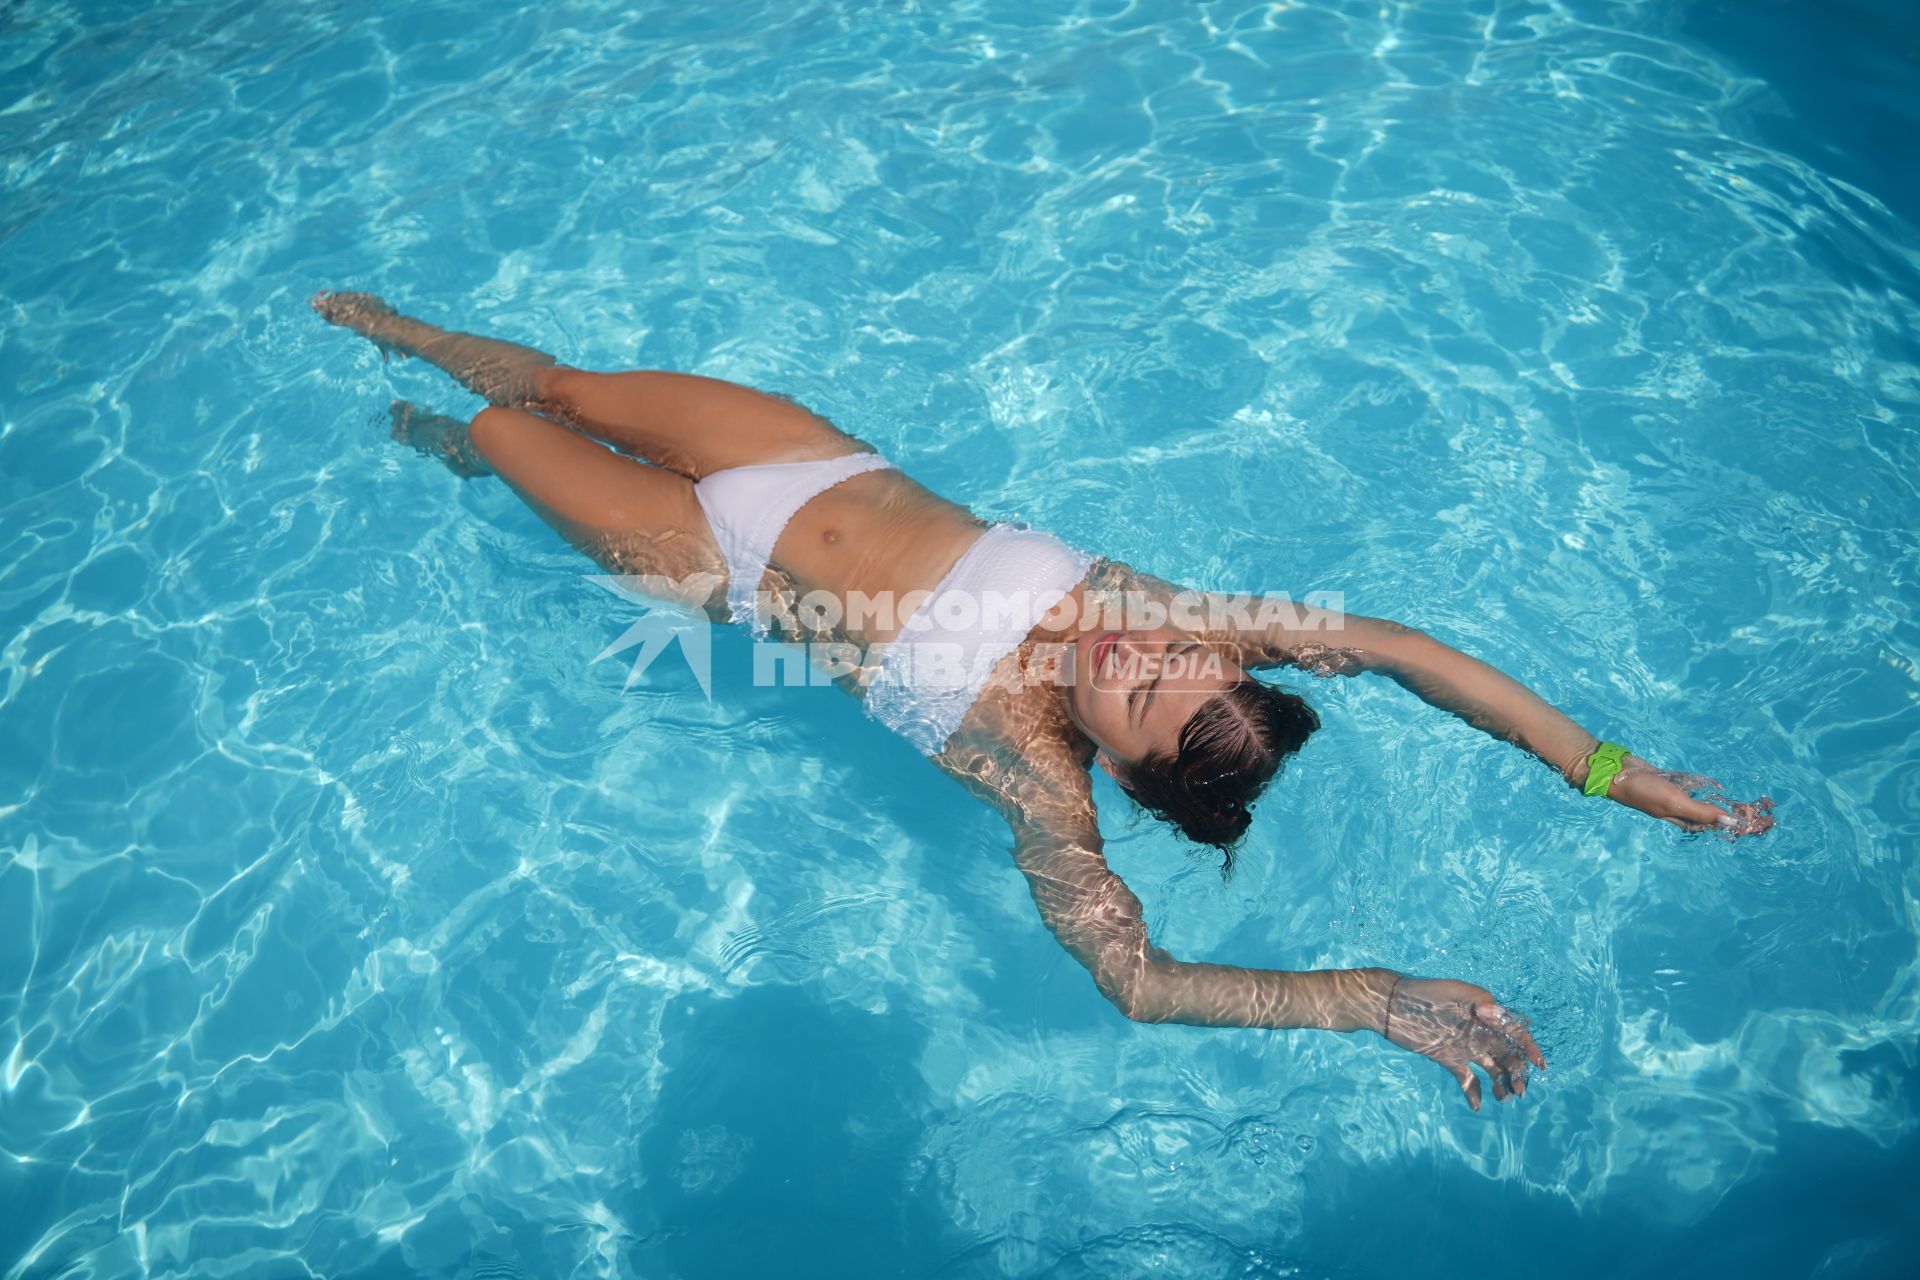 Самара. Девушка плавает в бассейне.